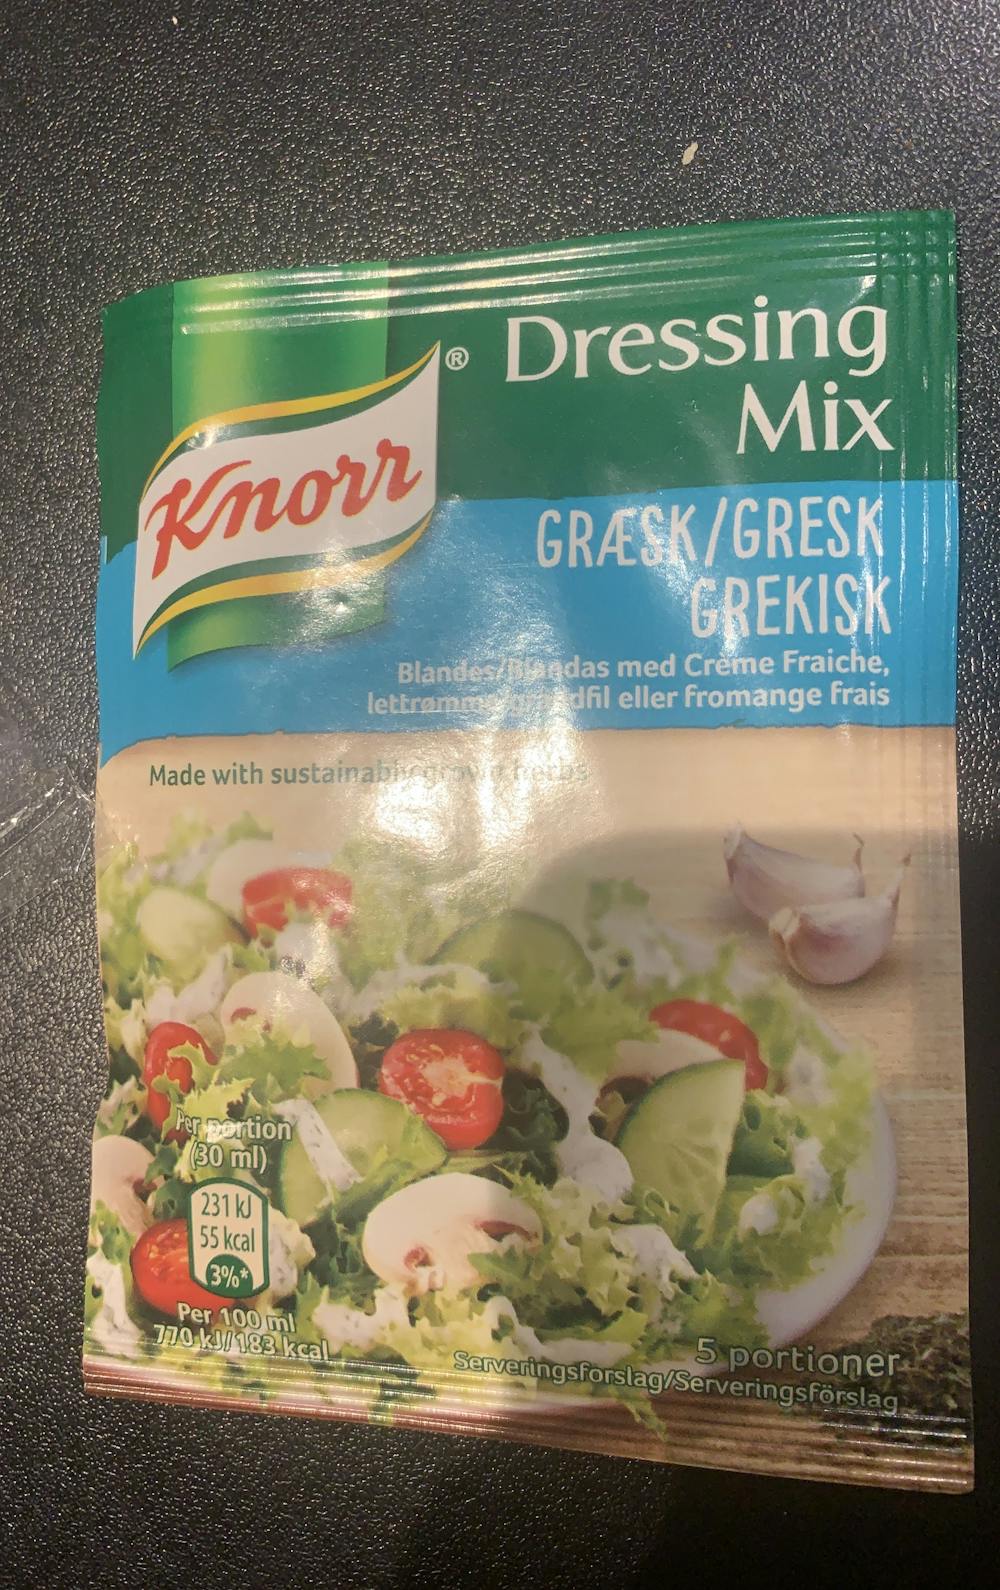 Gresk dressing mix, Knorr